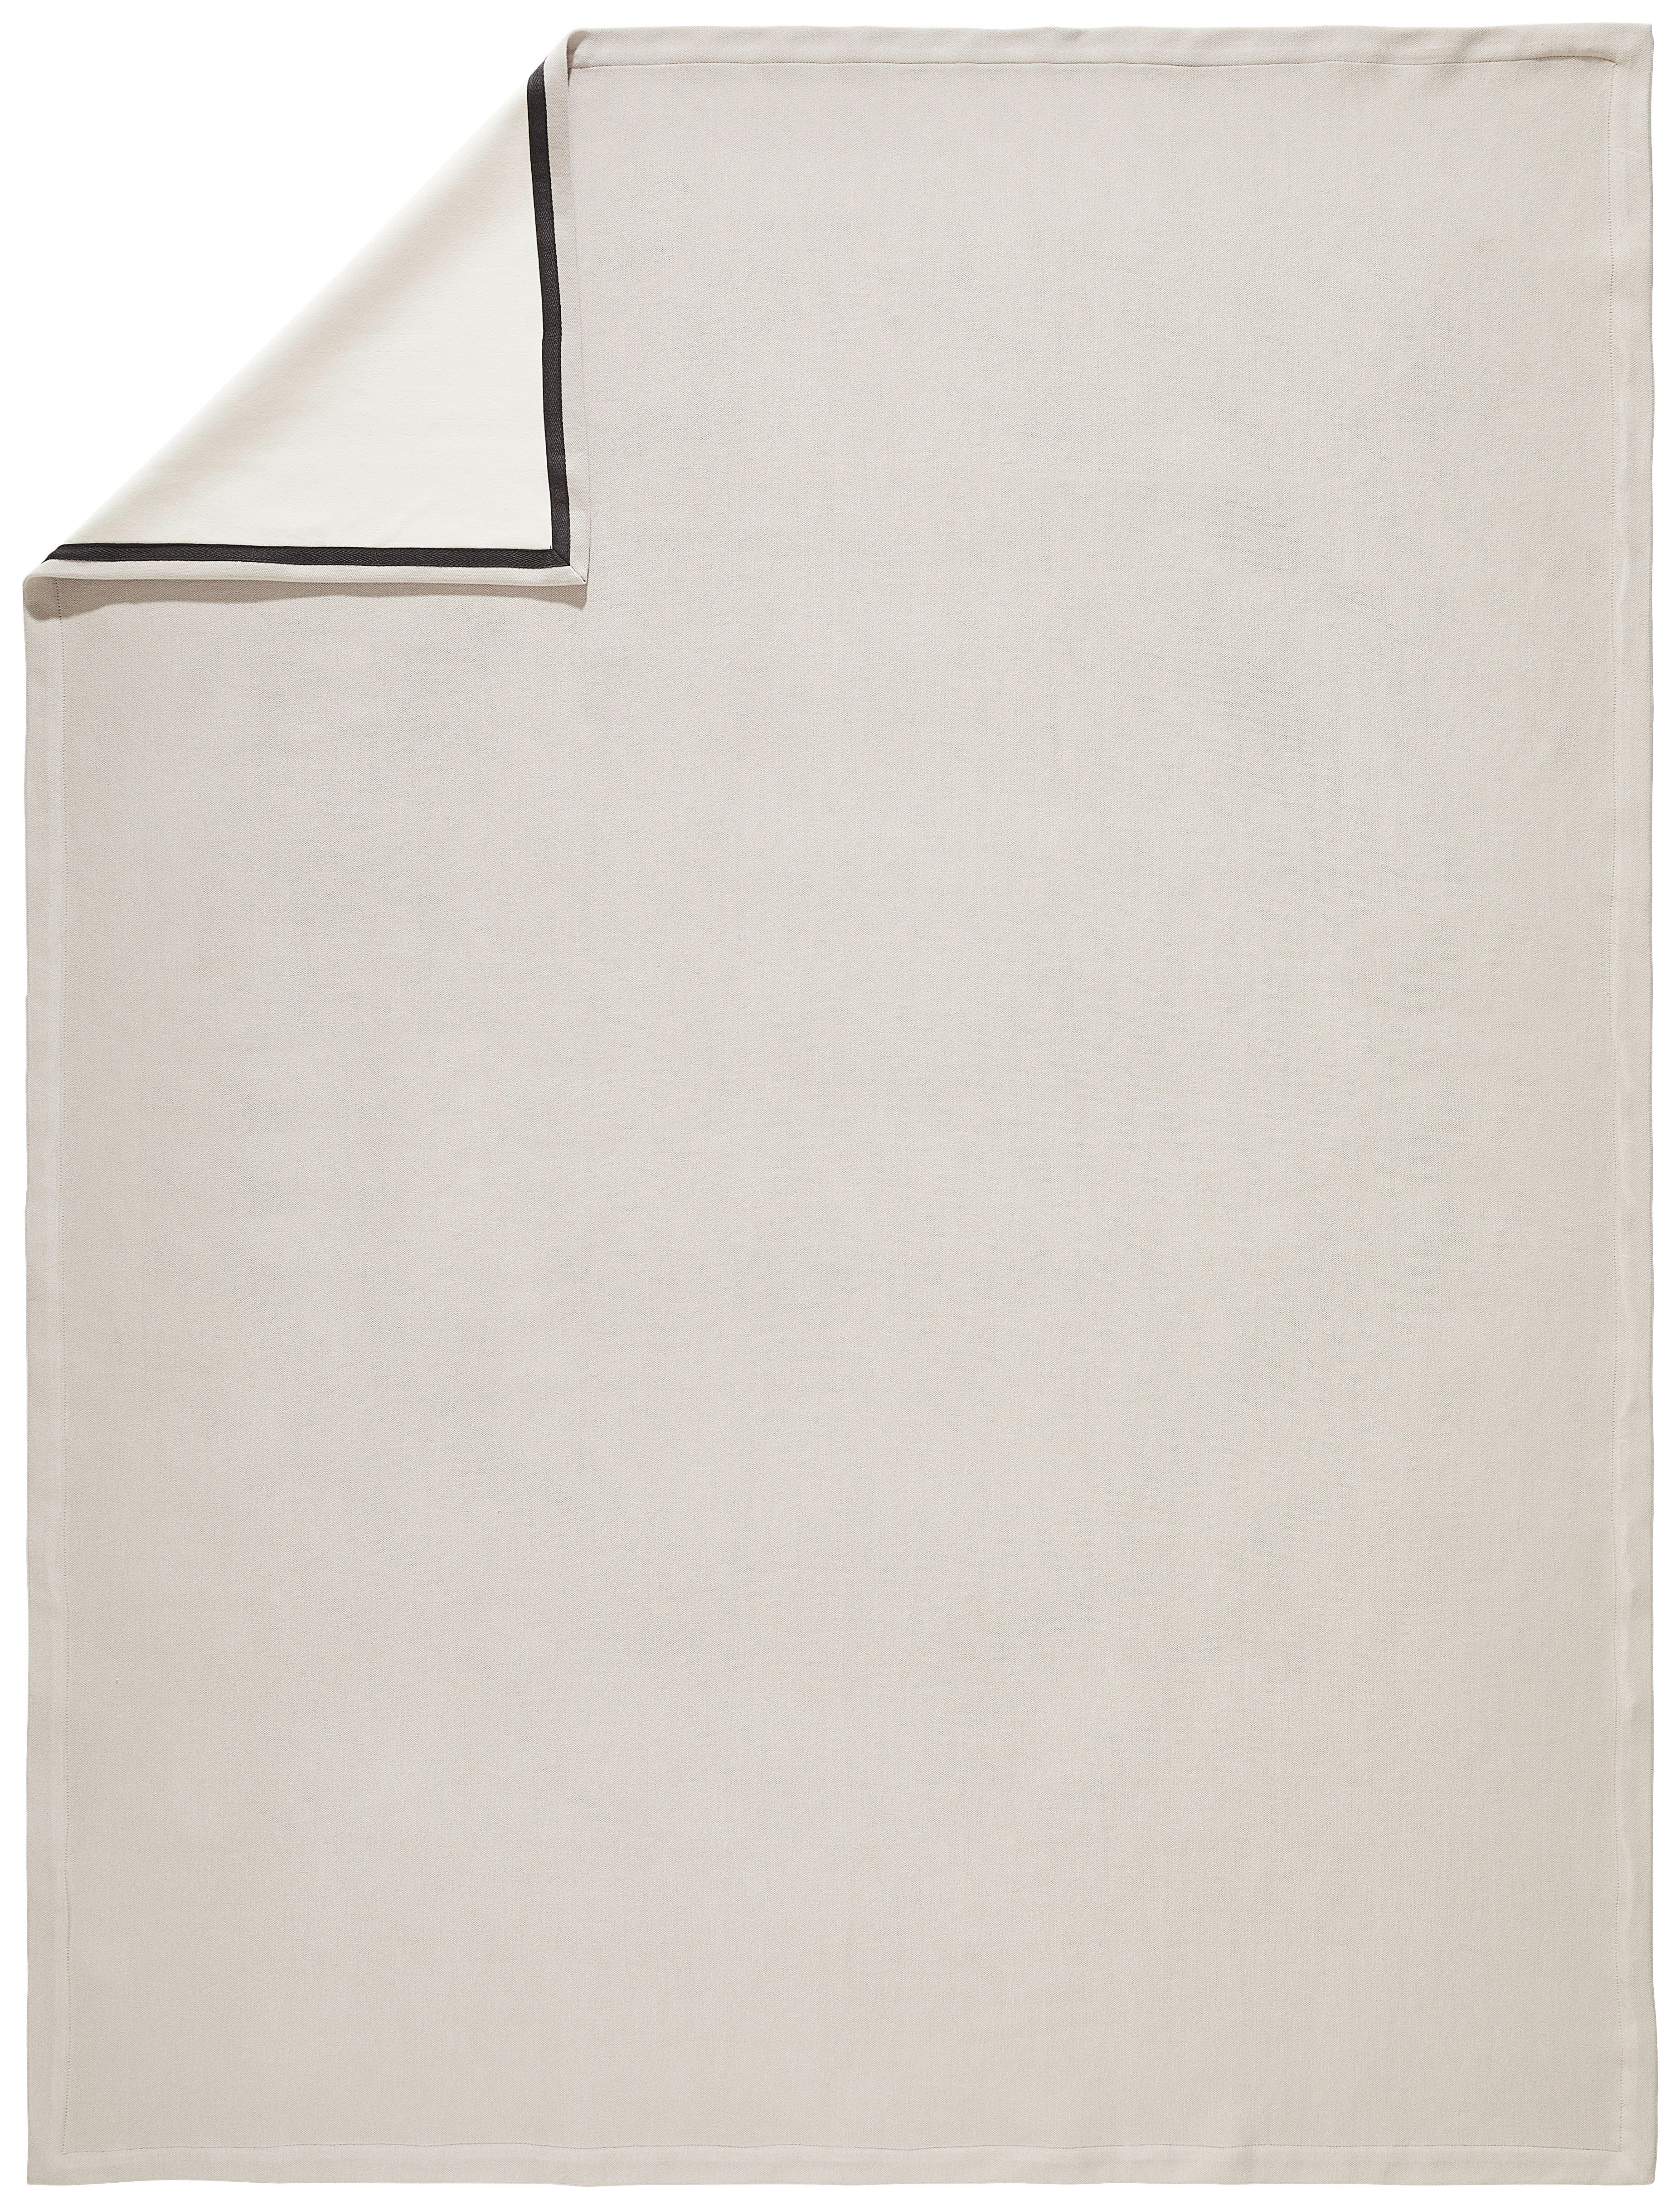 WOHNDECKE Tivat 130/170 cm  - Taupe/Beige, Design, Textil (130/170cm) - Dieter Knoll